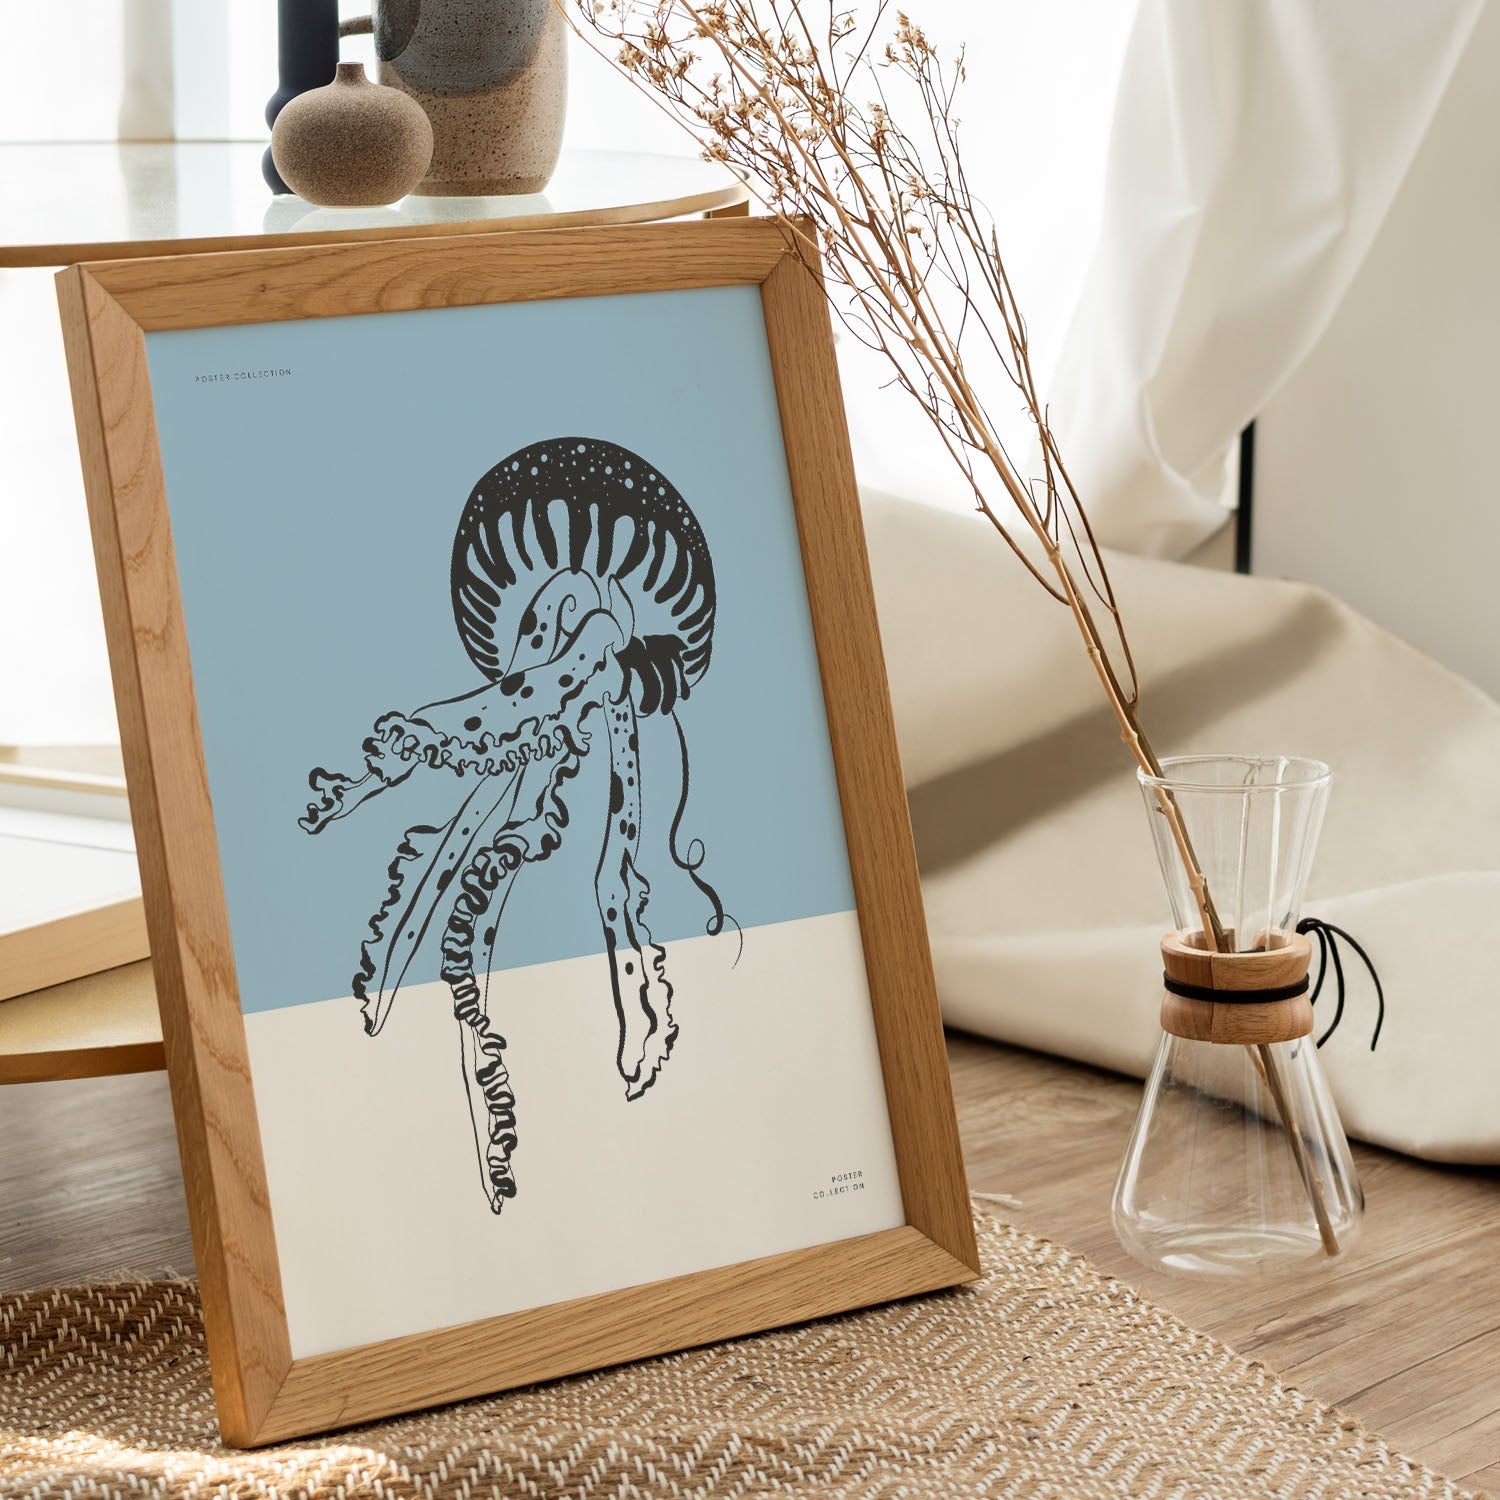 Pacific Sea Nettle Jellyfish-Artwork-Nacnic-Nacnic Estudio SL